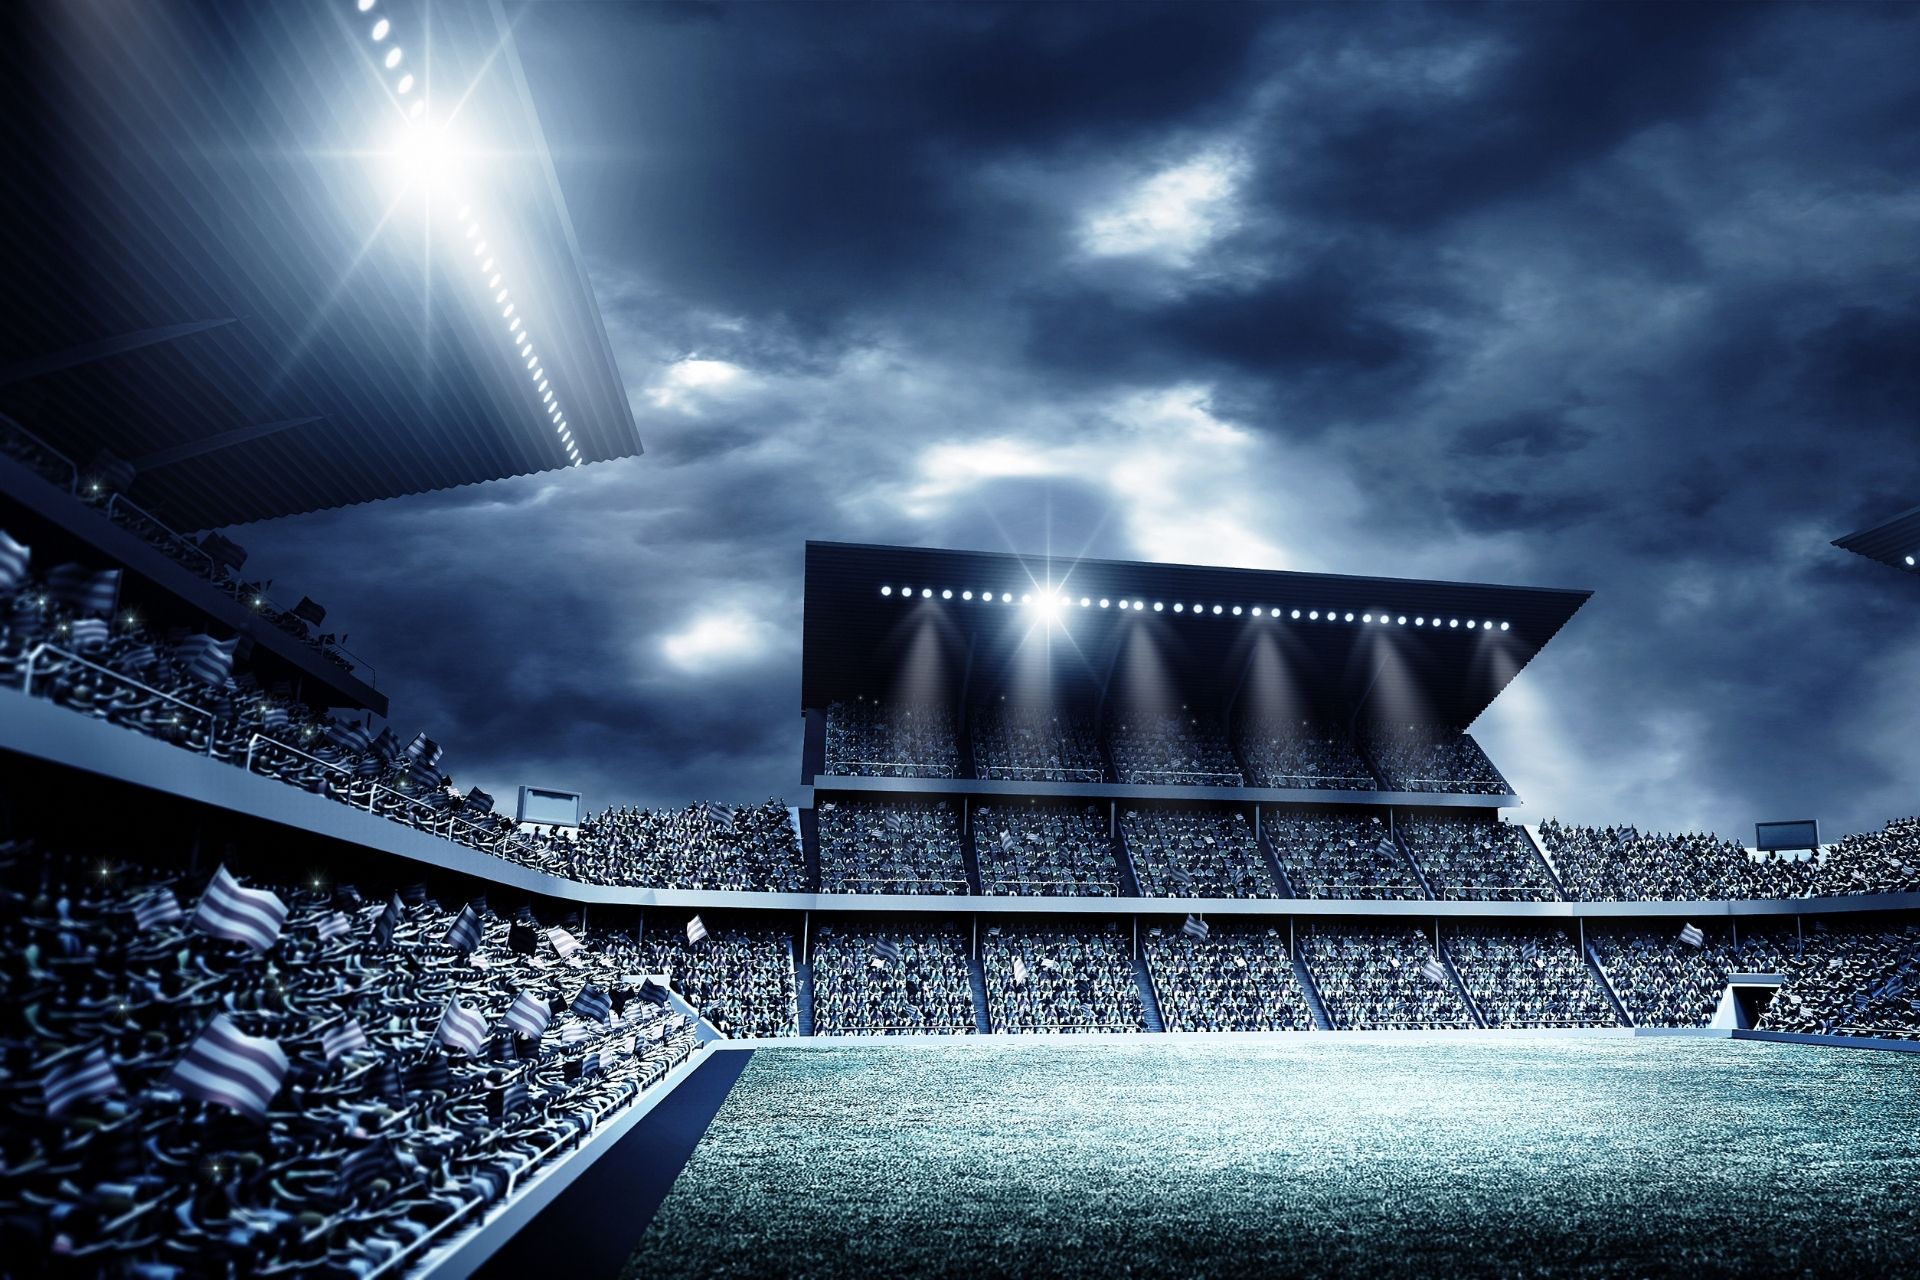 Na stadionie Stade Louis II dnia 2022-02-27 12:00 odbyło się spotkanie Monaco kontra Reims zakończone wynikiem 1-2